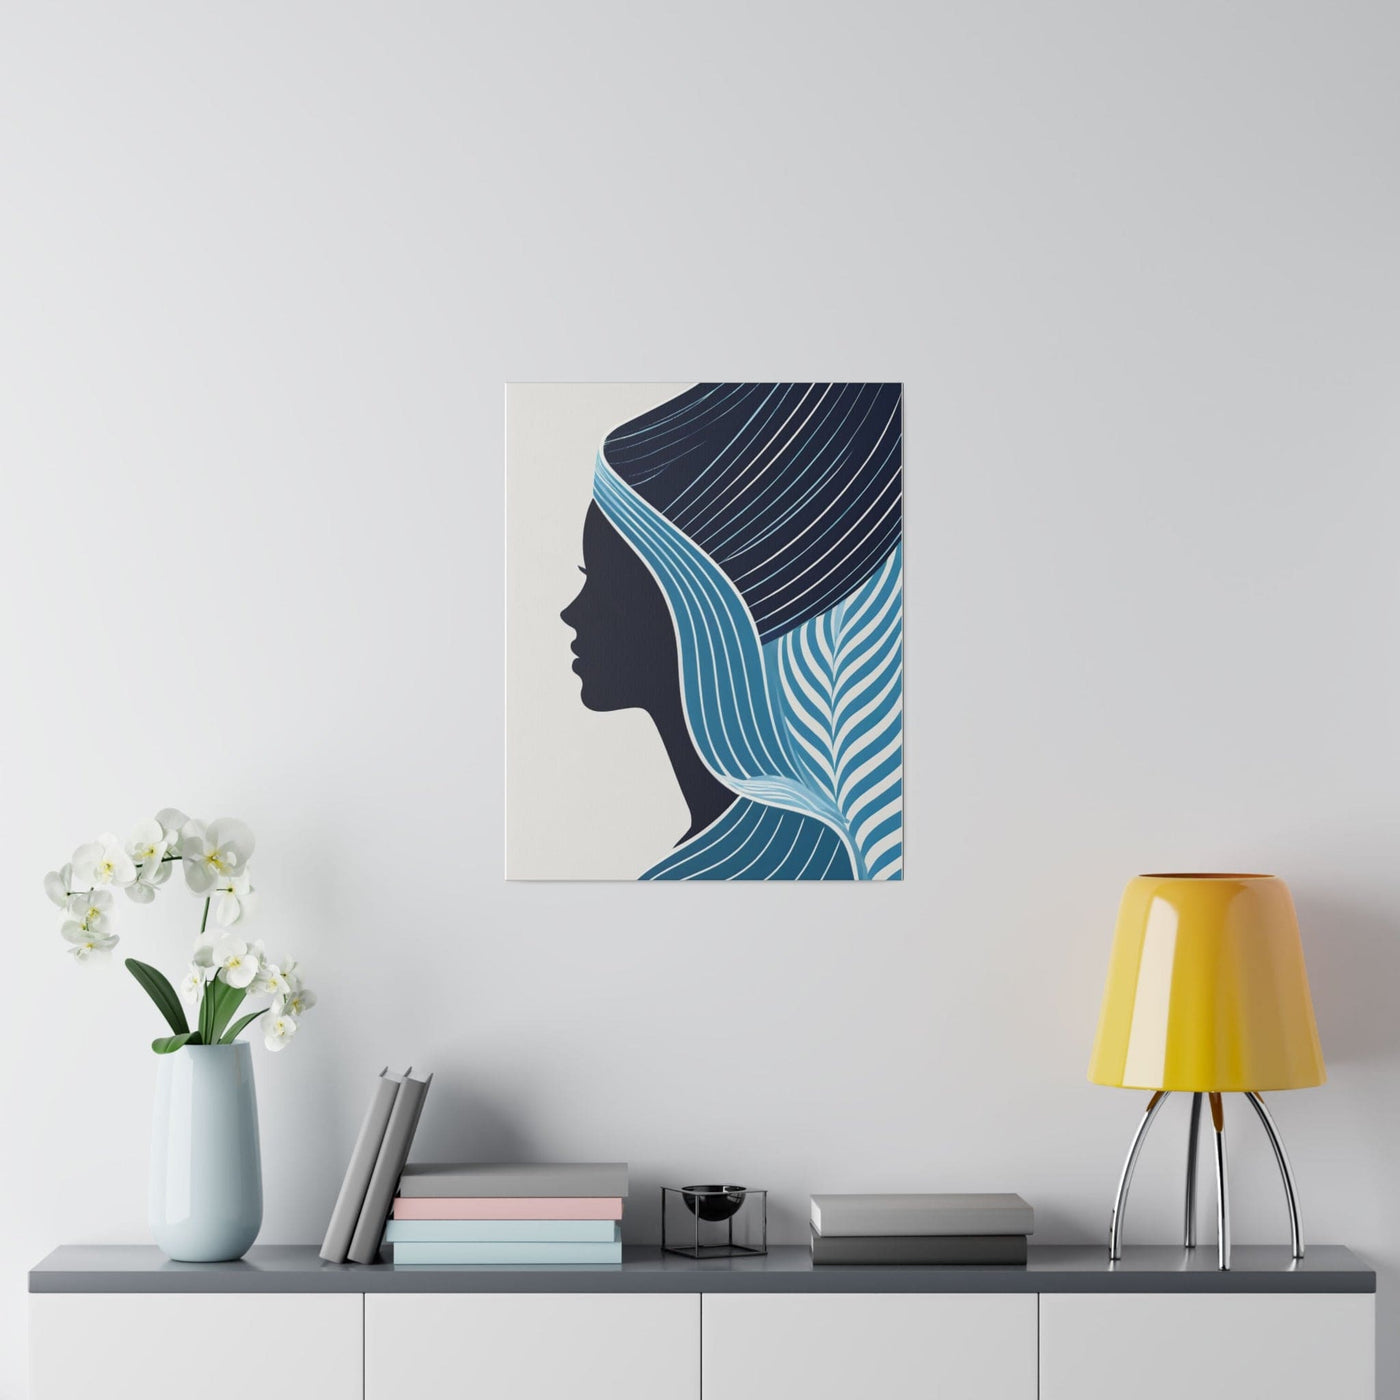 Wall Art Fine Print For Living Room Office Decor Bedroom Artwork Female Blue